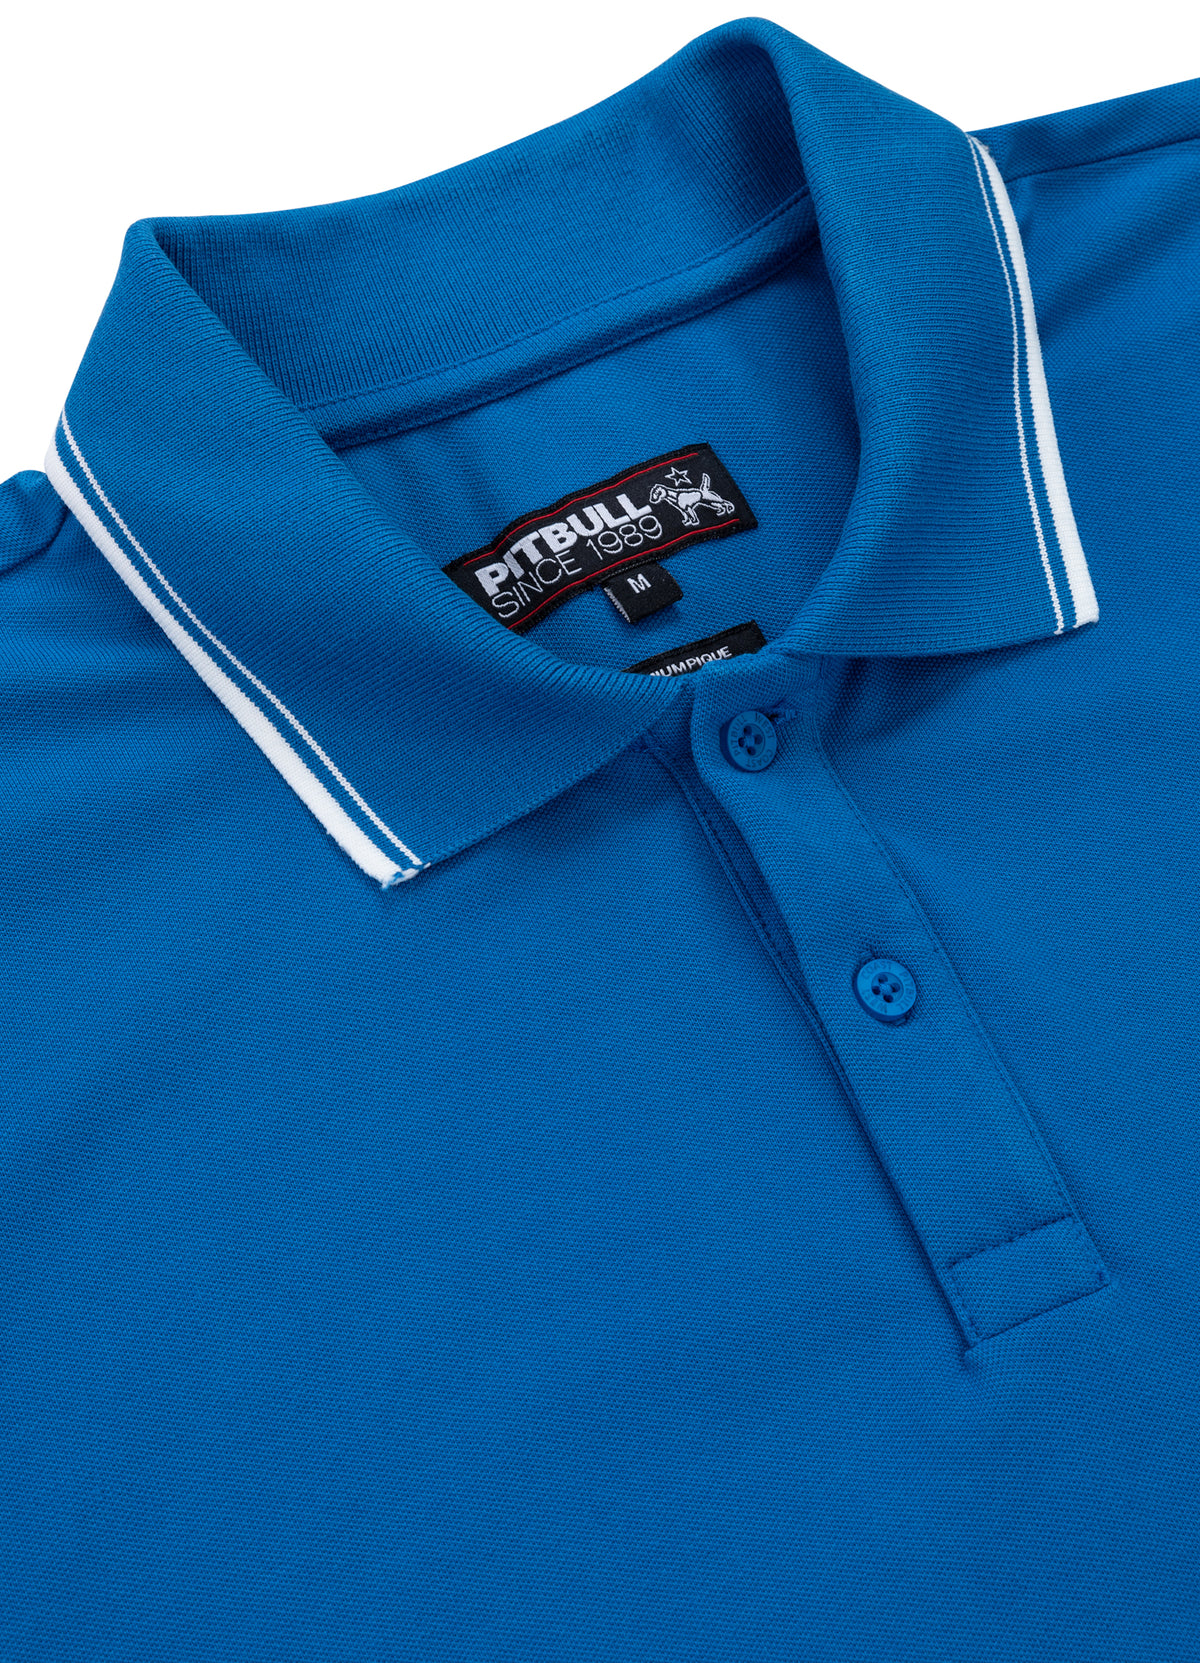 PIQUE STRIPES REGULAR Blue Polo T-shirt - Pitbullstore.eu